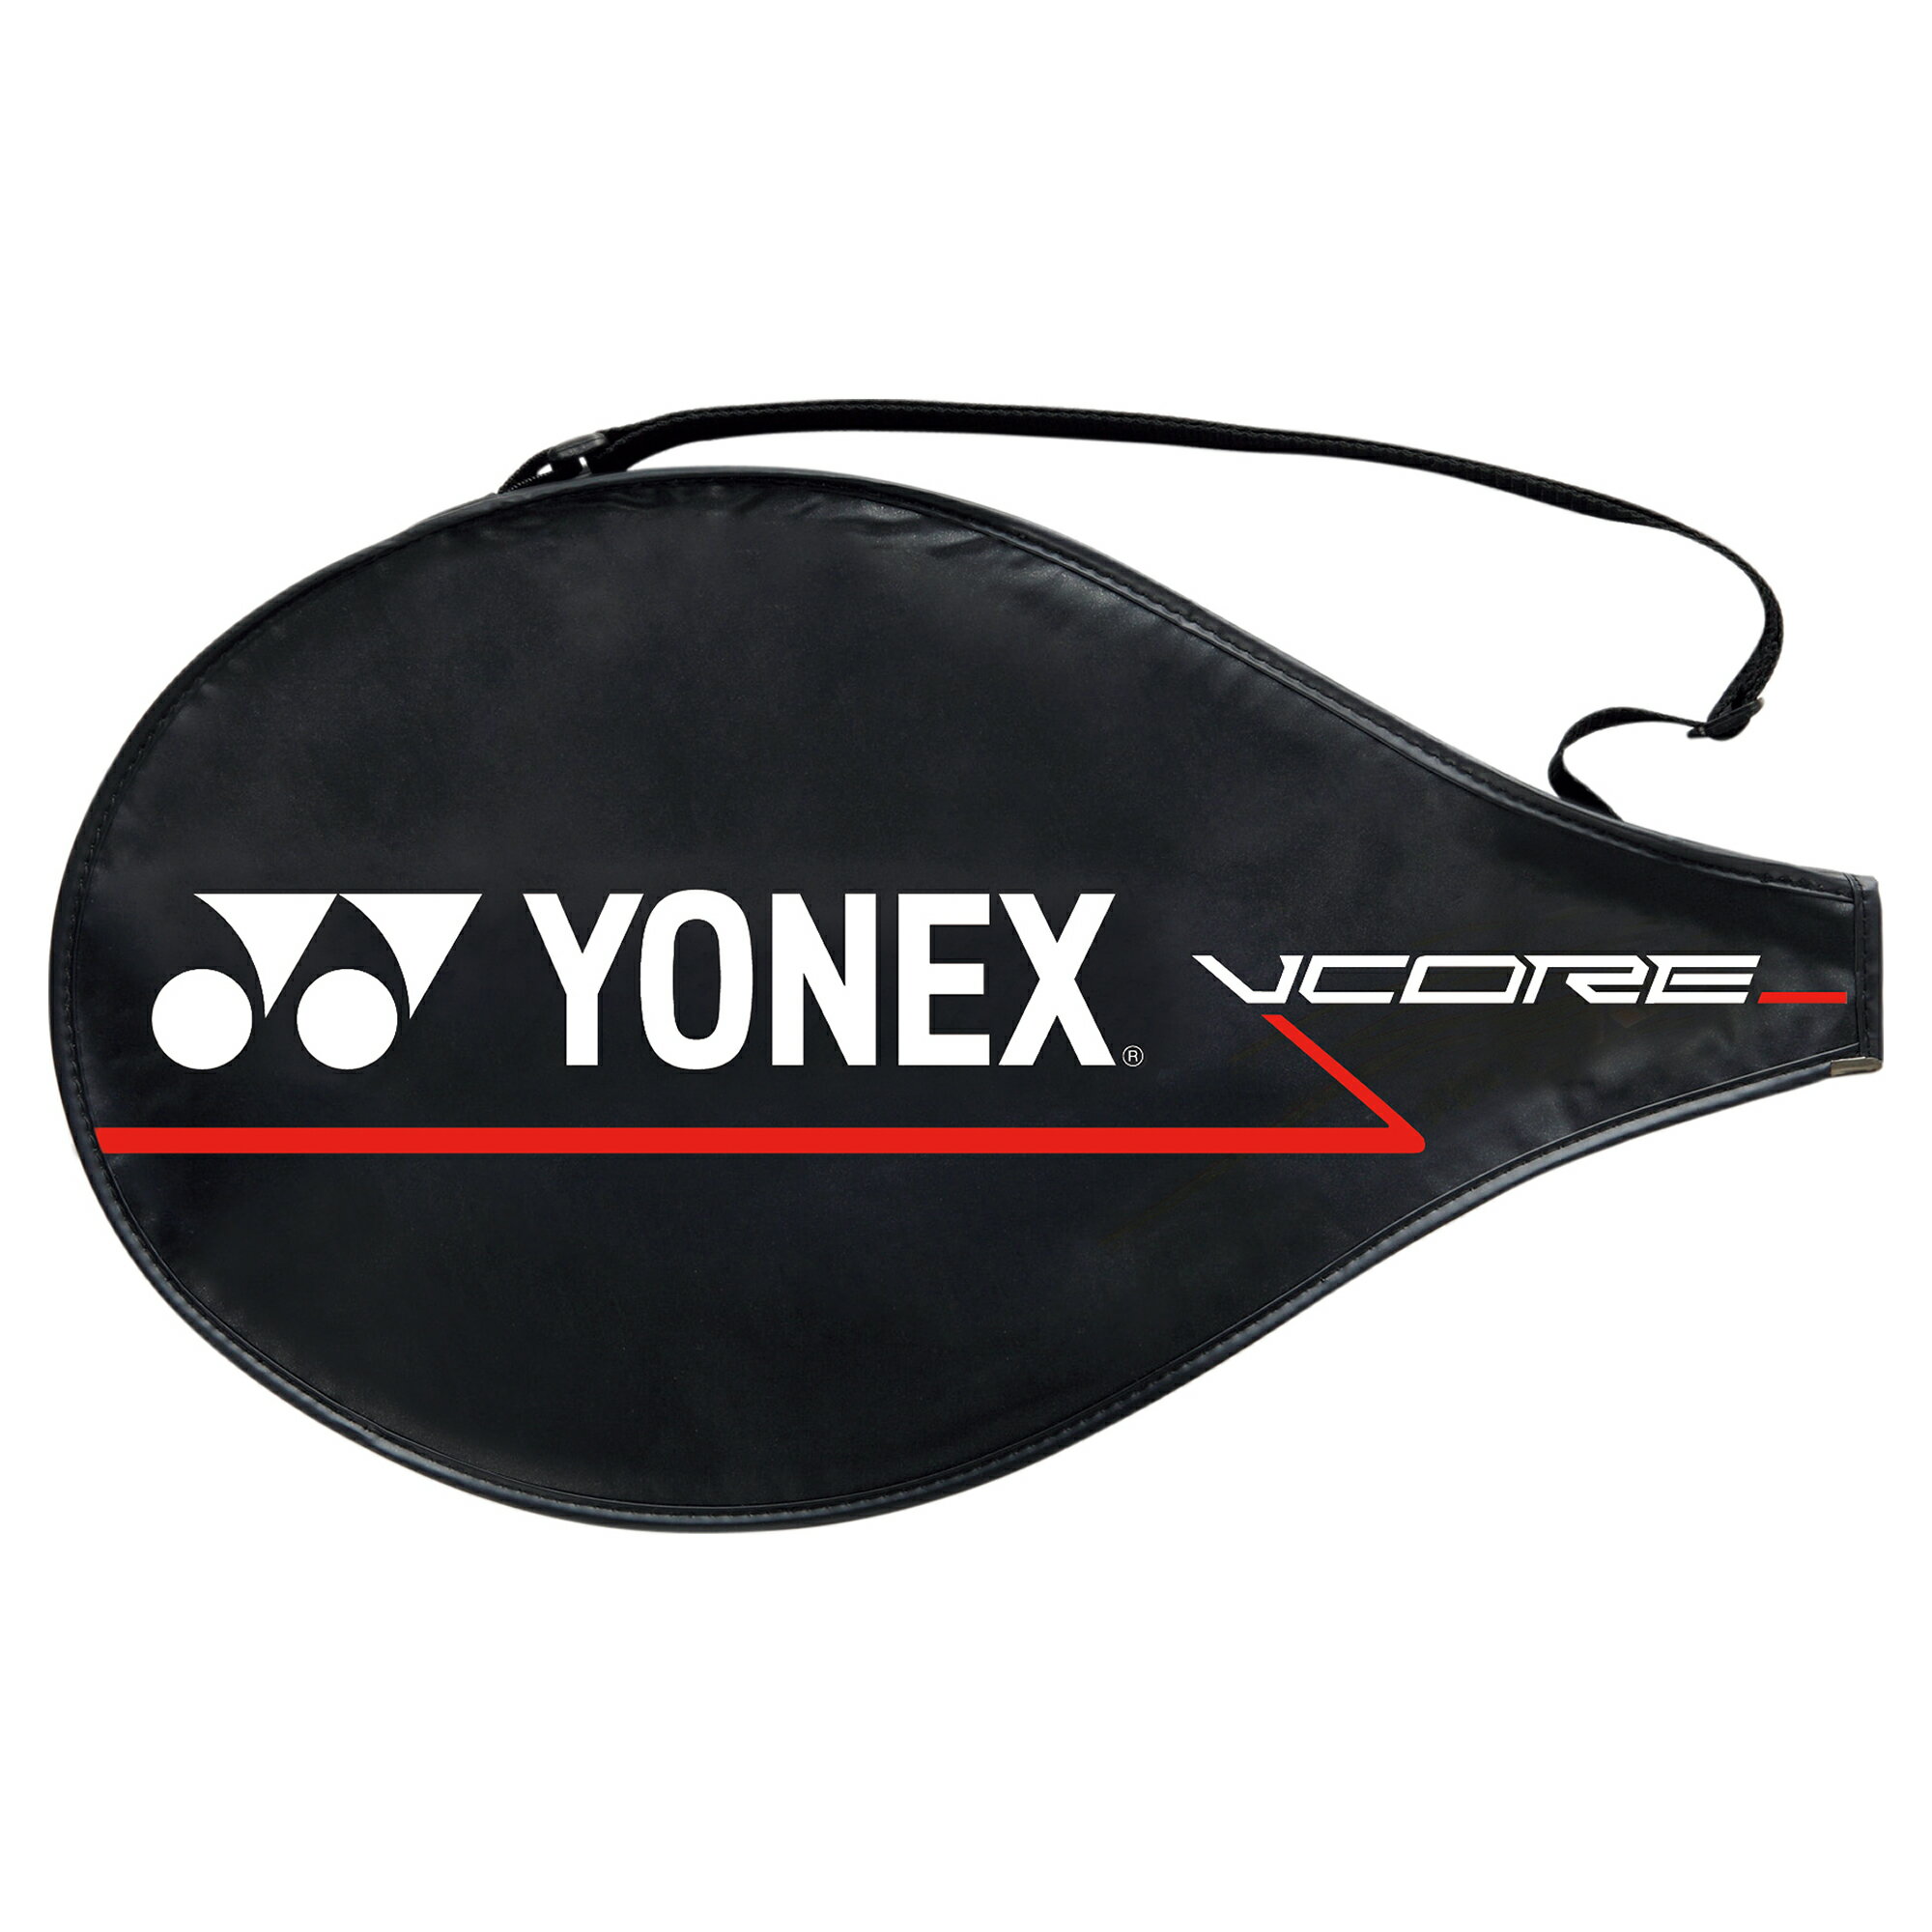 「ガット張り上げ済み」ヨネックス YONEX テニスジュニアラケット Vコア 26 VCORE 26 07VC26G 『即日出荷』 2